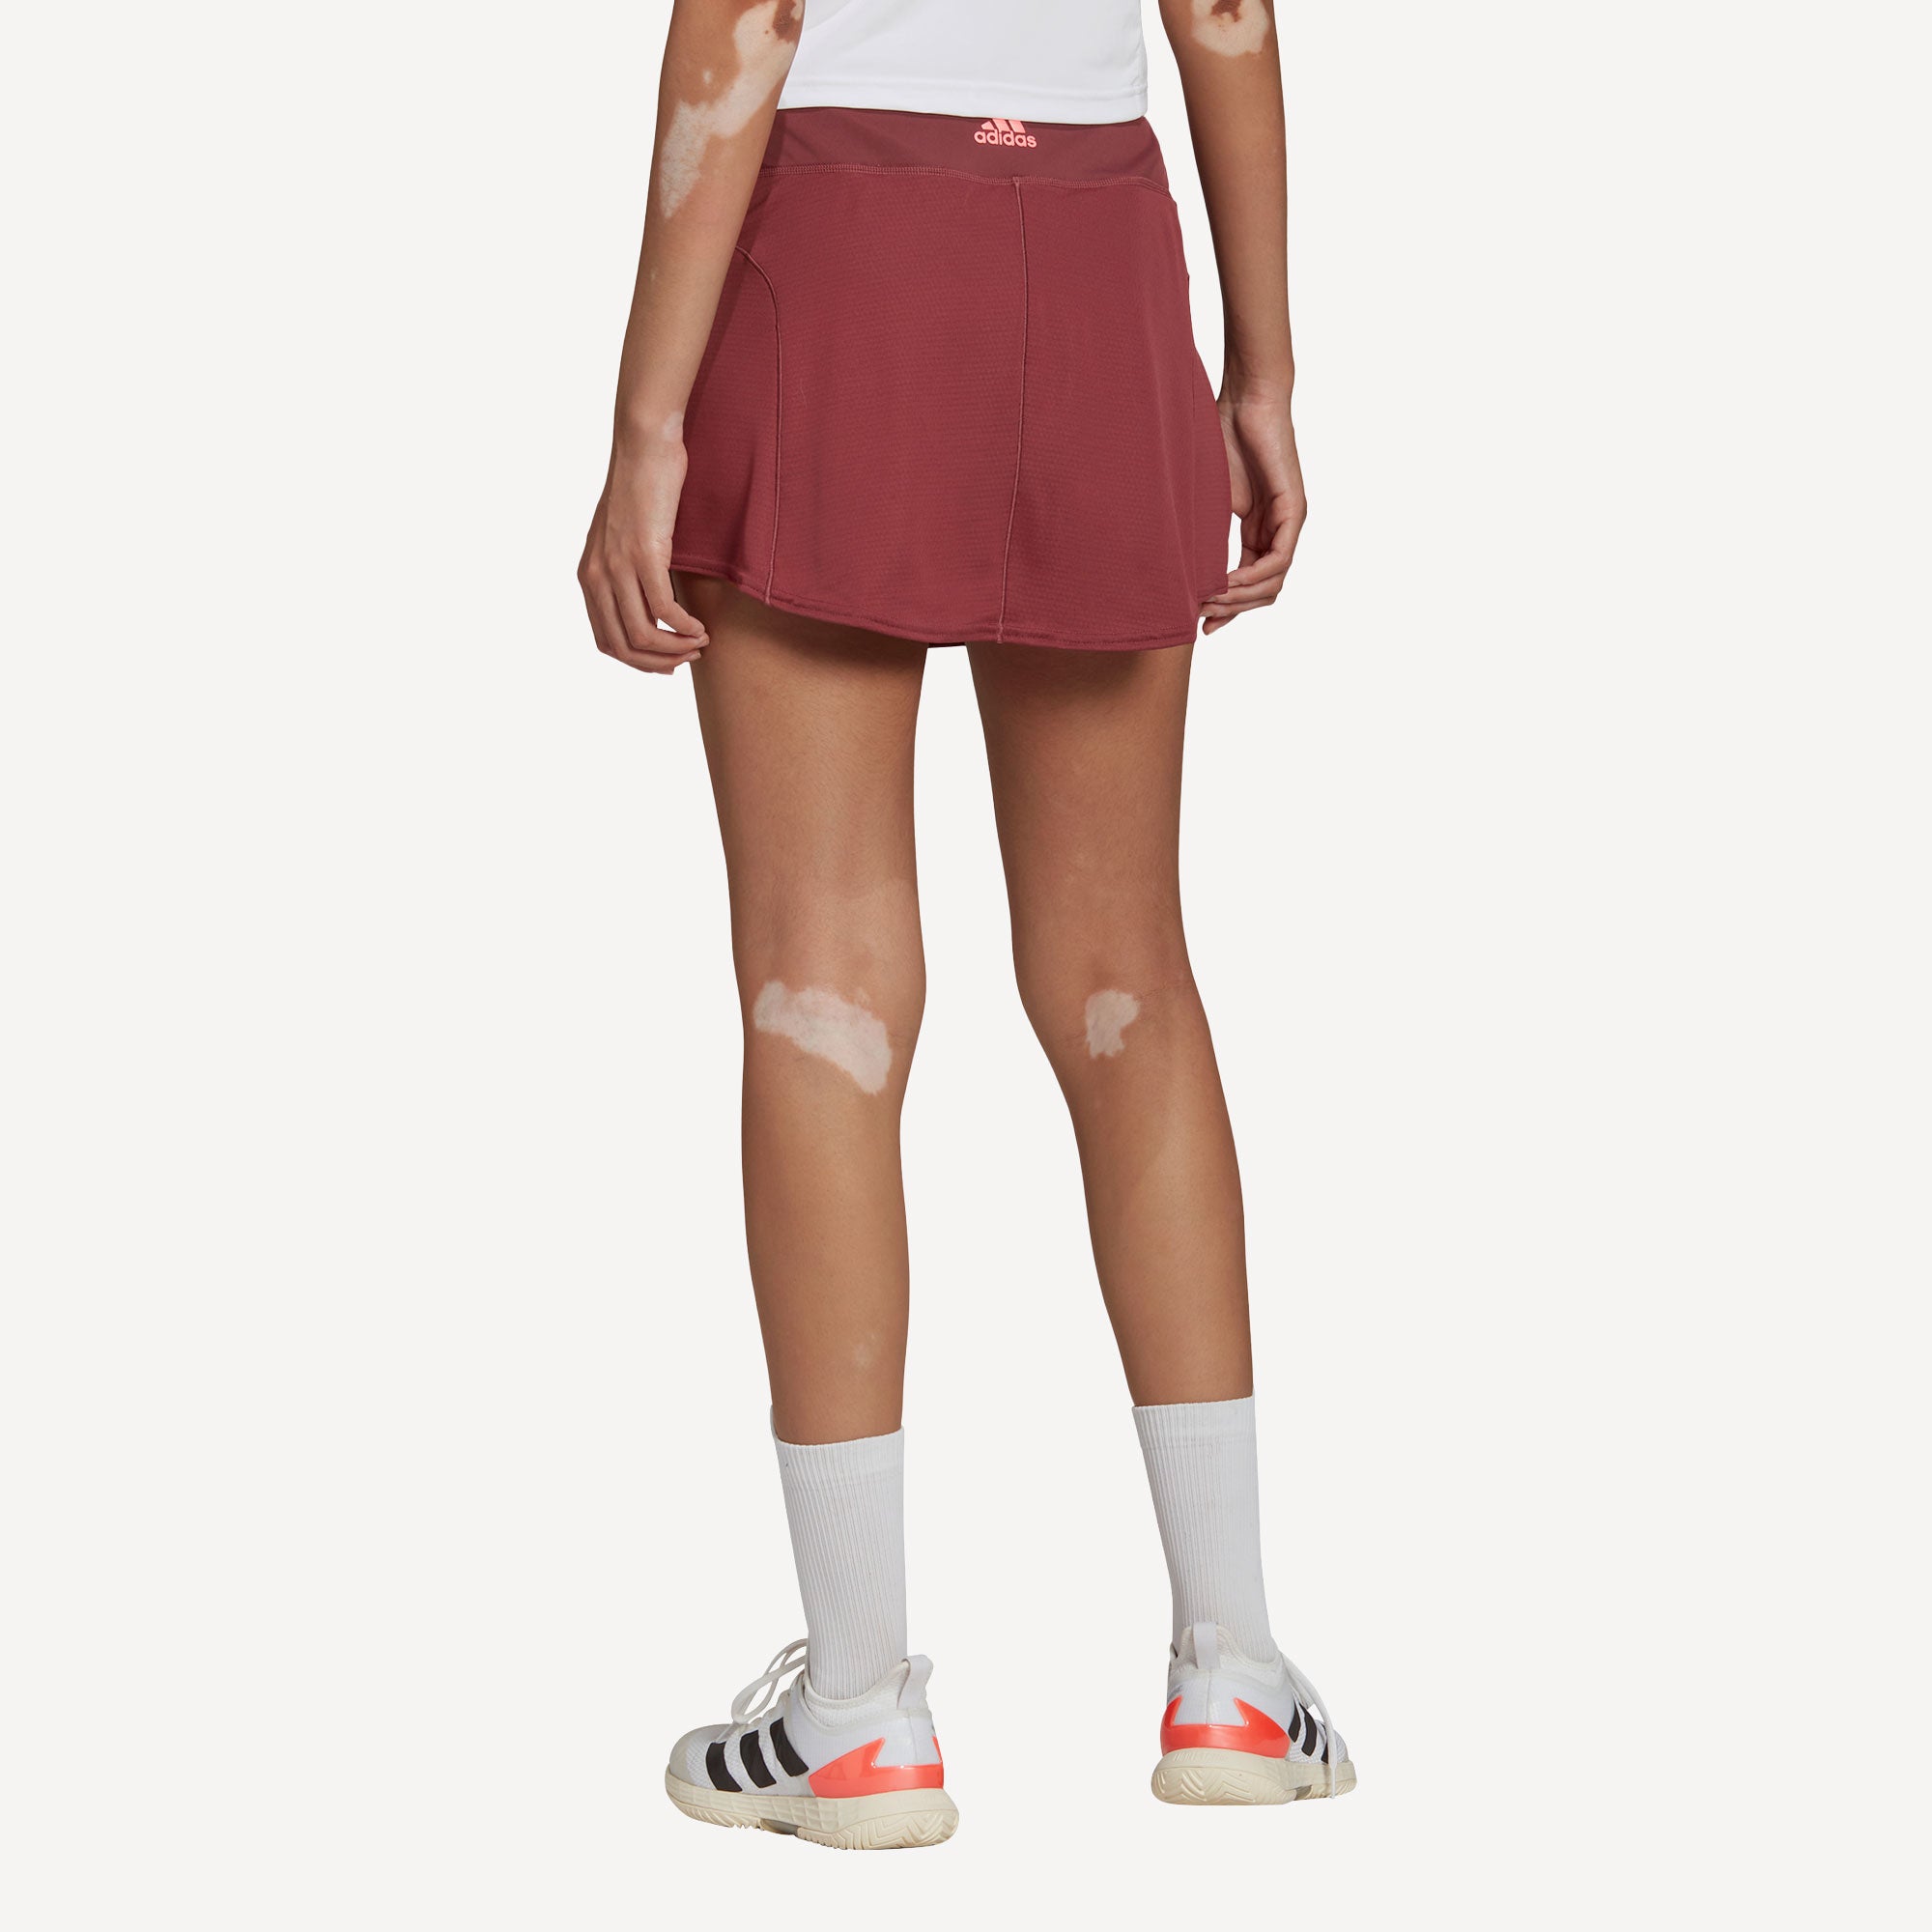 adidas Match Women's Tennis Skirt Red (2)